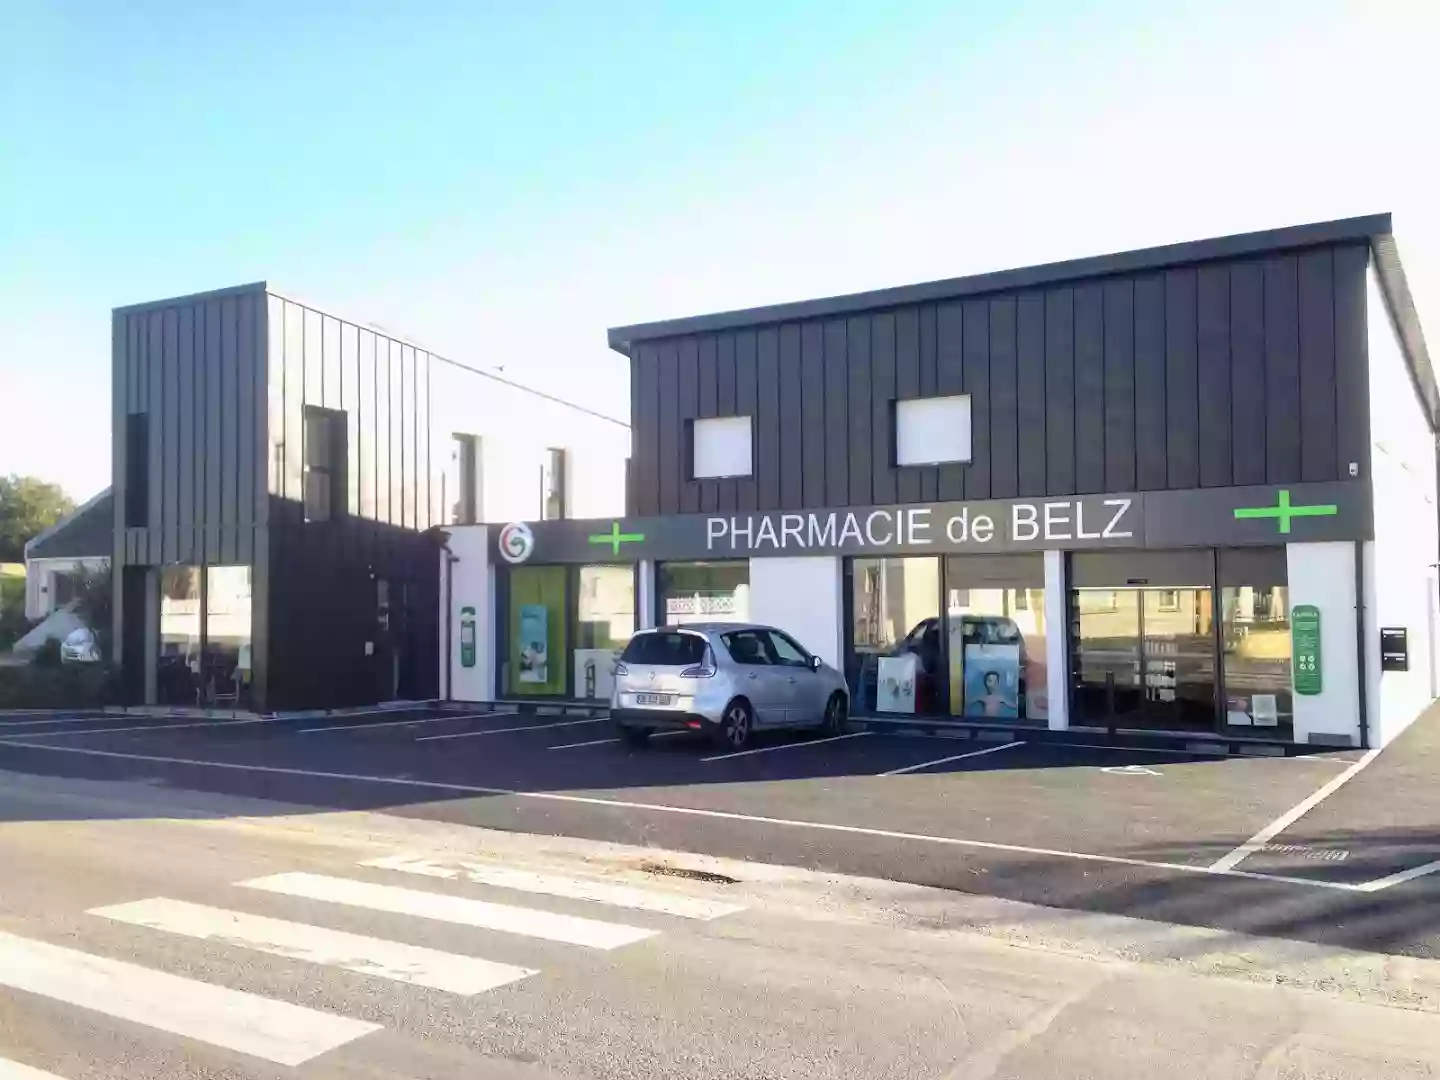 Pharmacie de Belz - Location vente matériel médical - Orthopédie - Aromathérapie - Parapharmacie